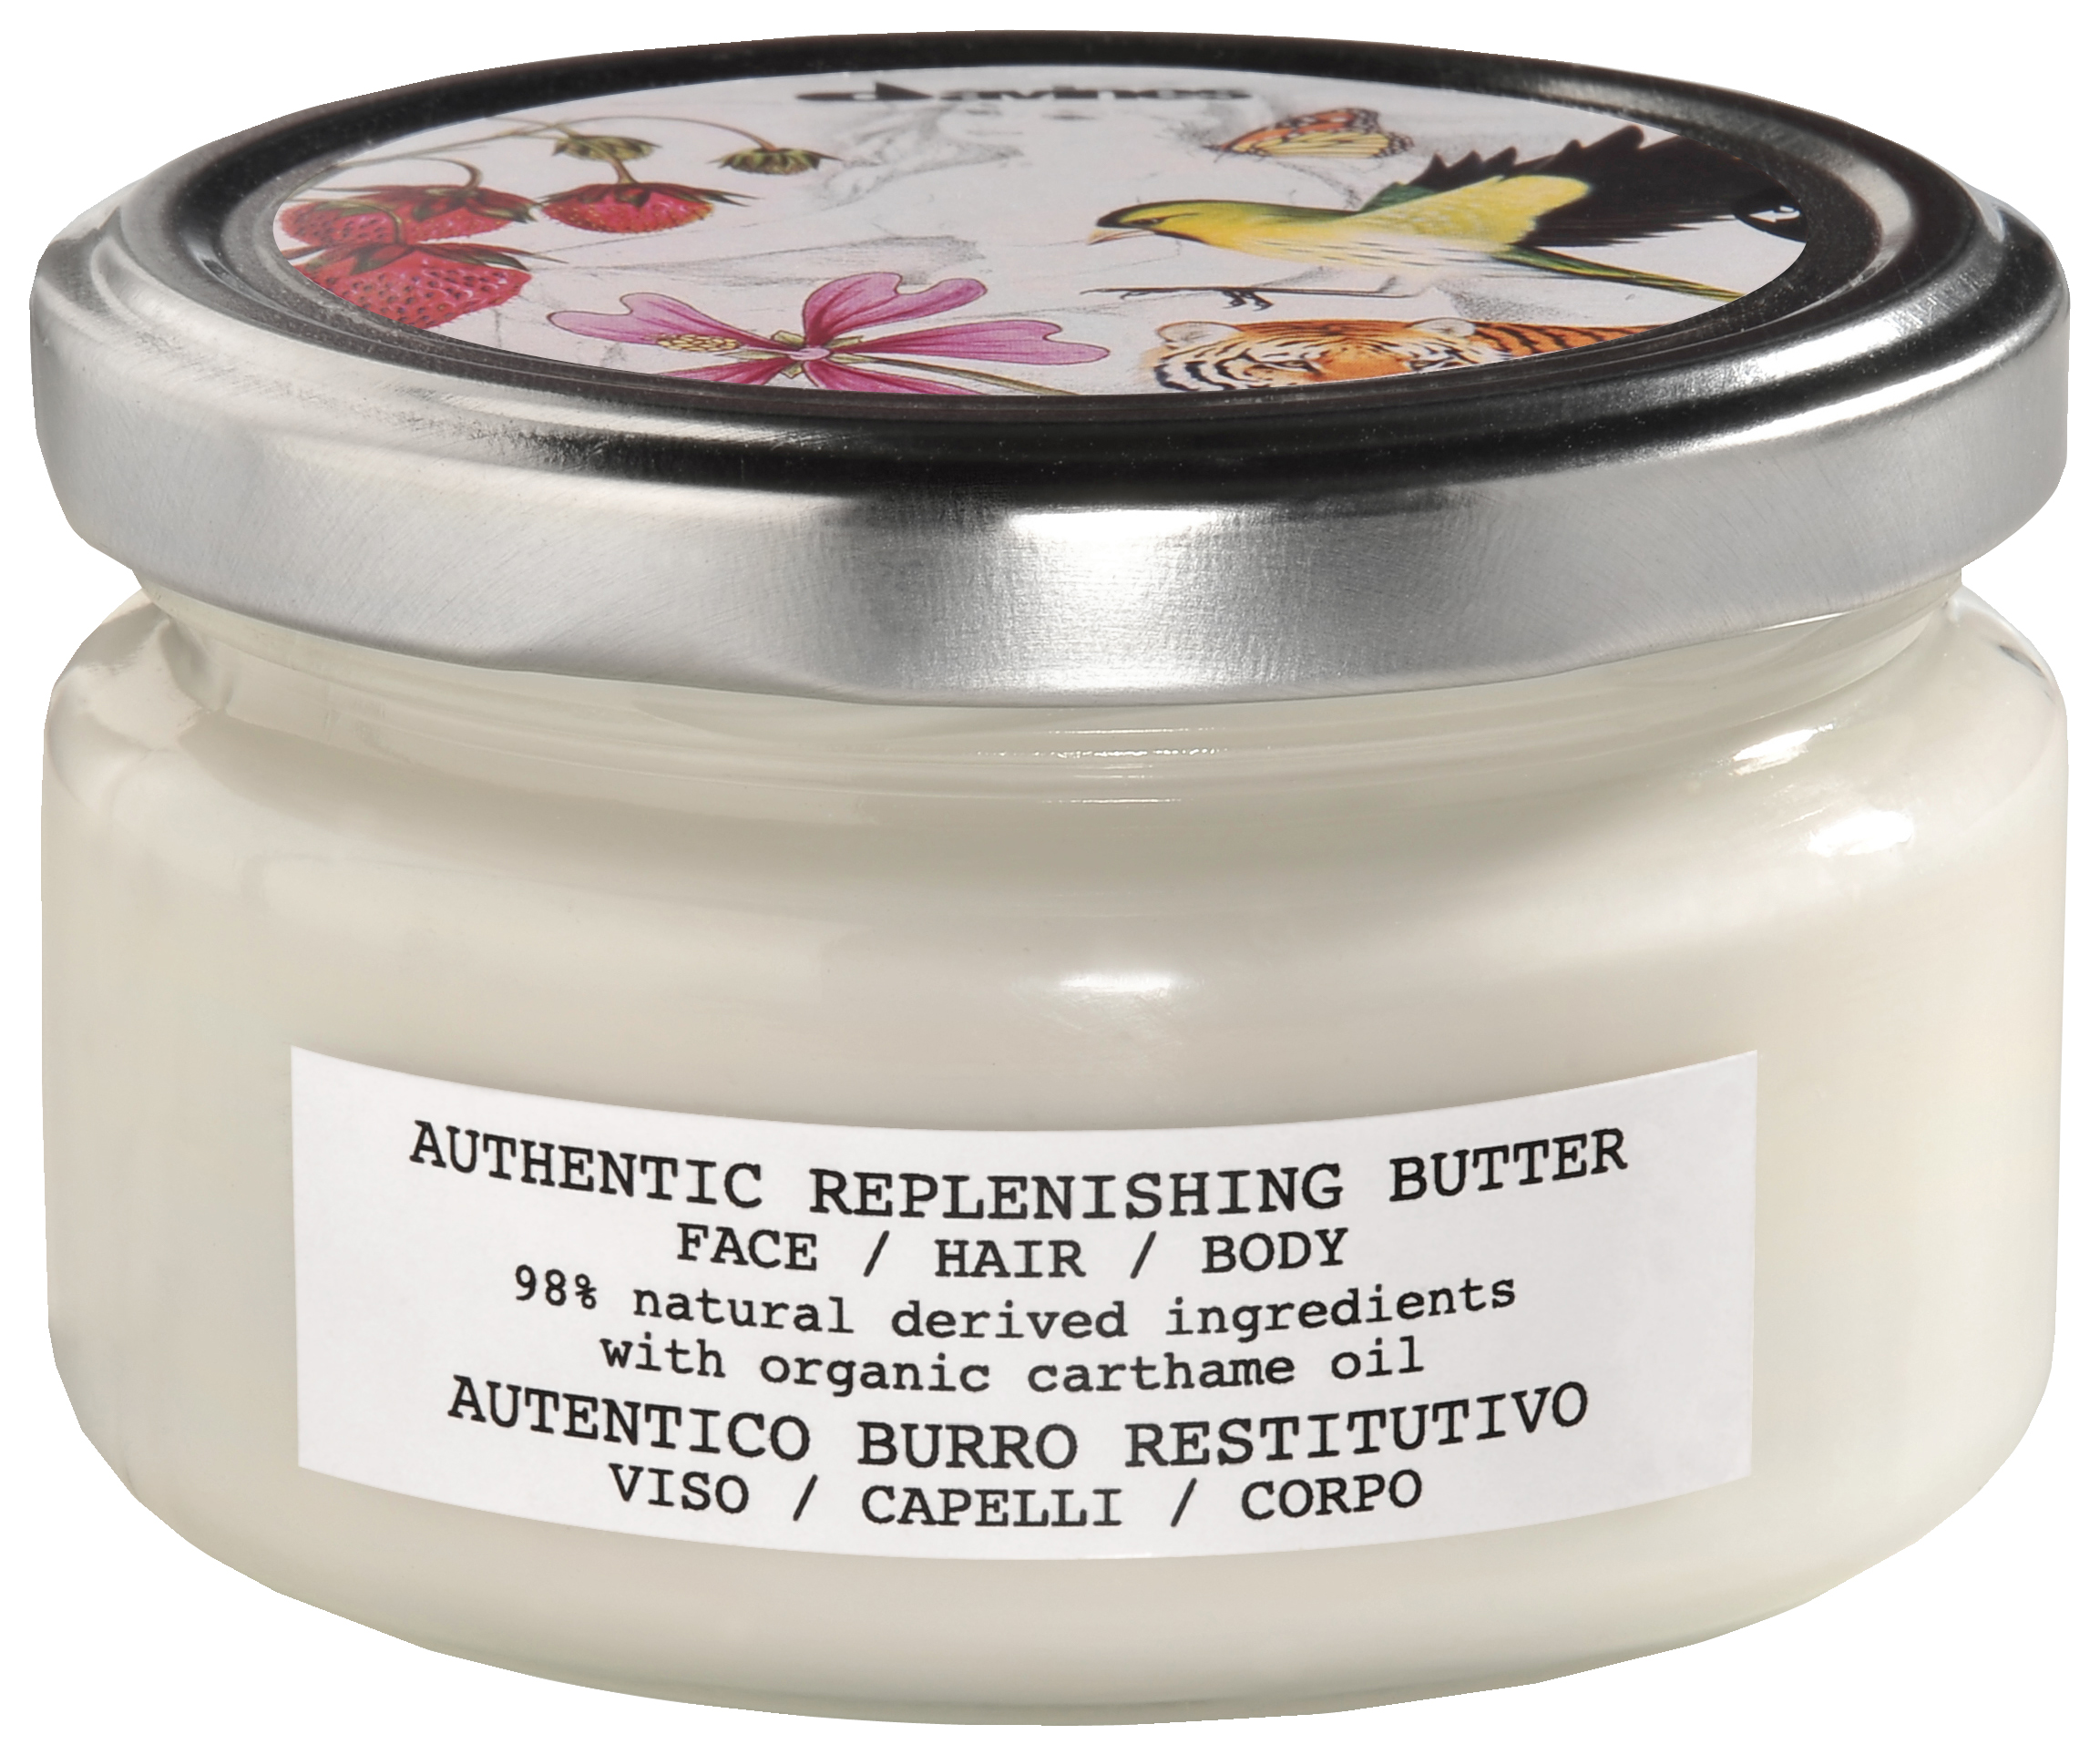 authentic replenishing butter.jpg